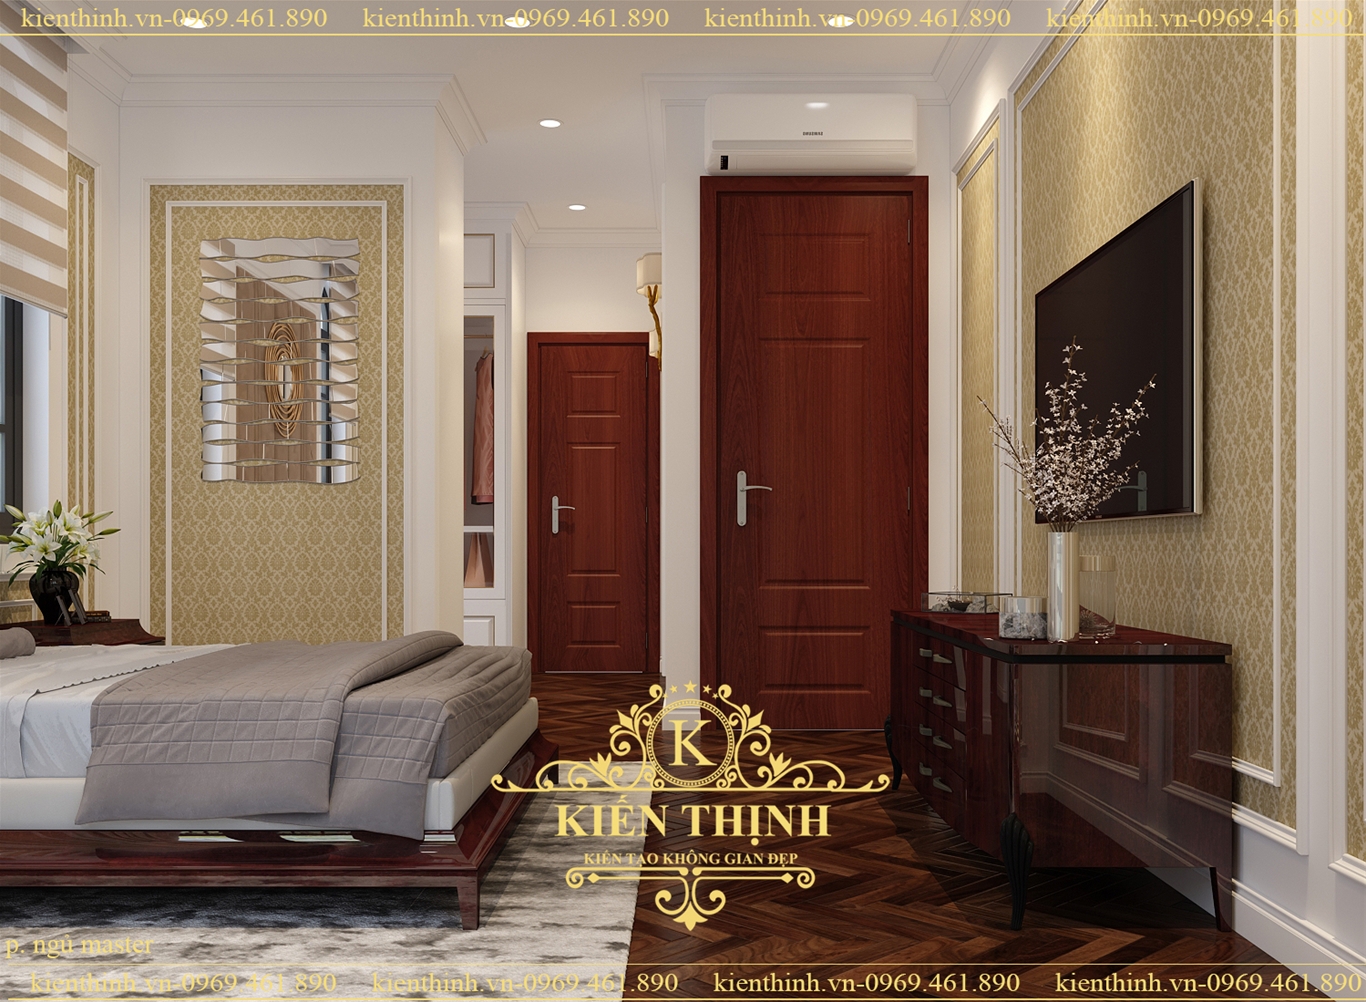 mẫu thiết kế nội thất phòng ngủ tân cổ điển cao cấp luxury interior bedroom design